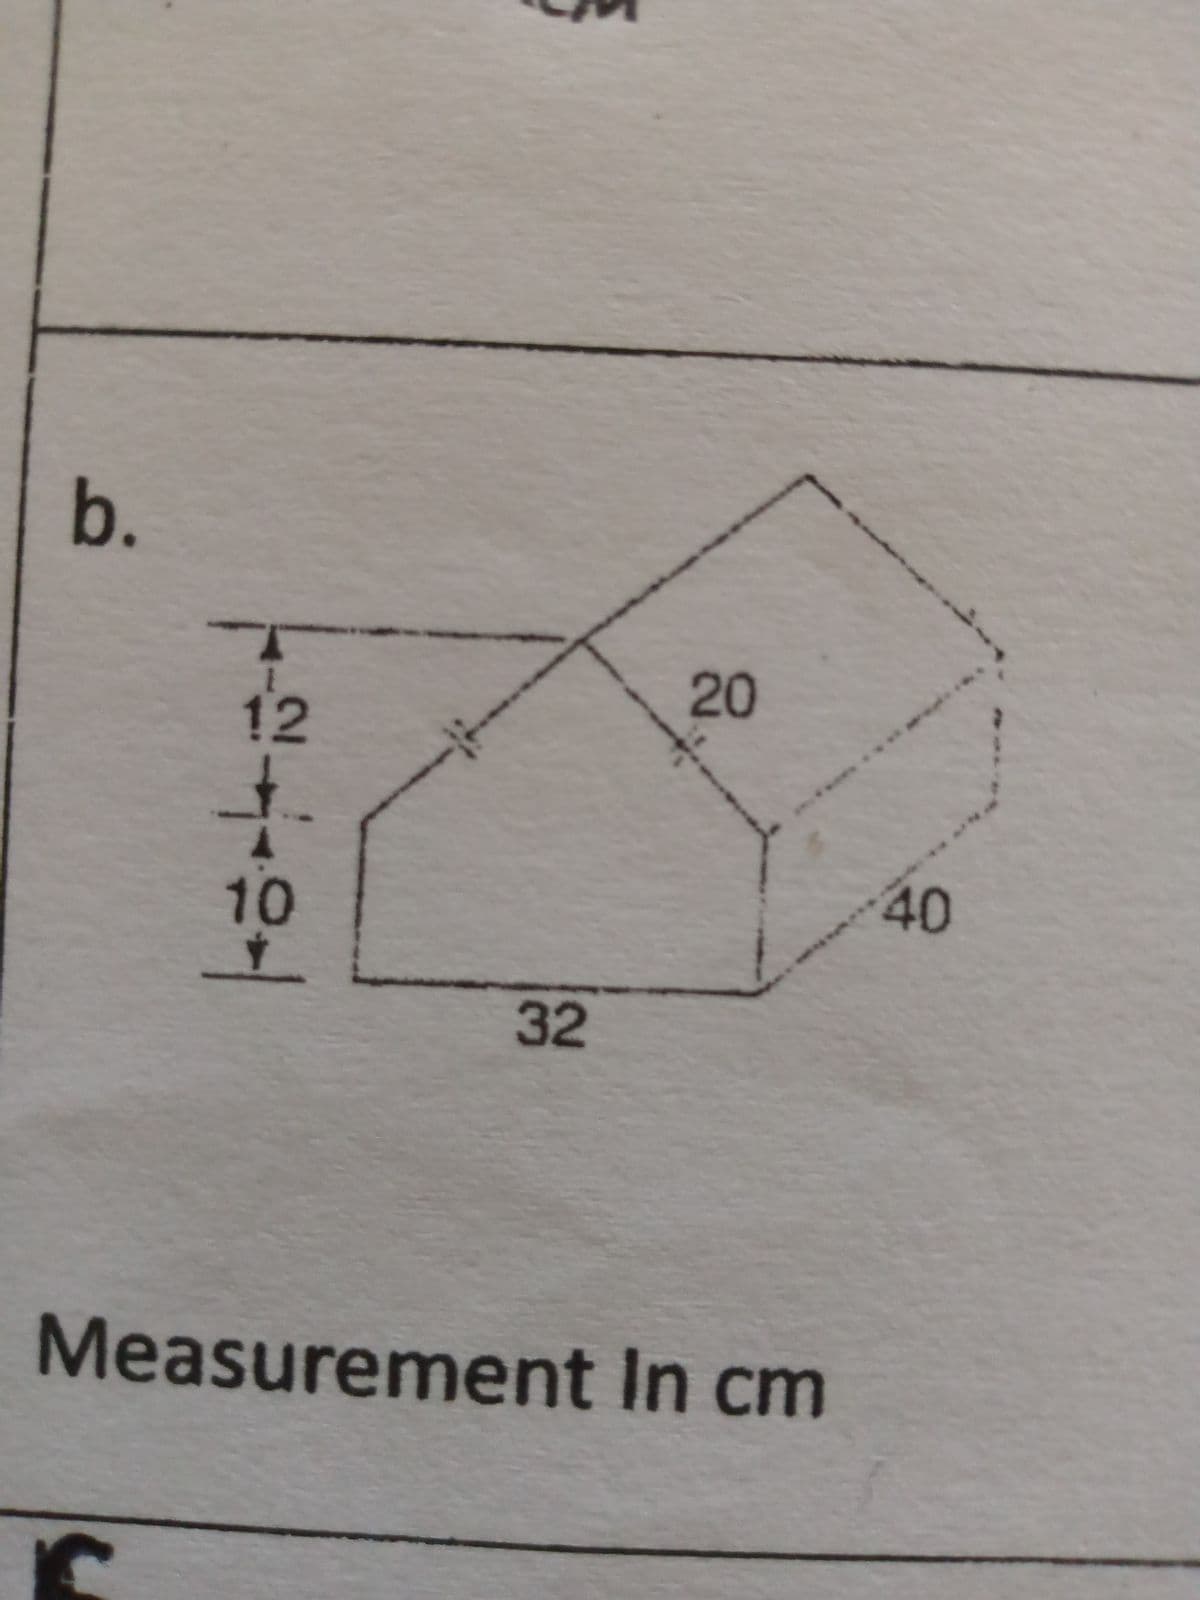 b.
12
_k
10
32
20
Measurement In cm
40